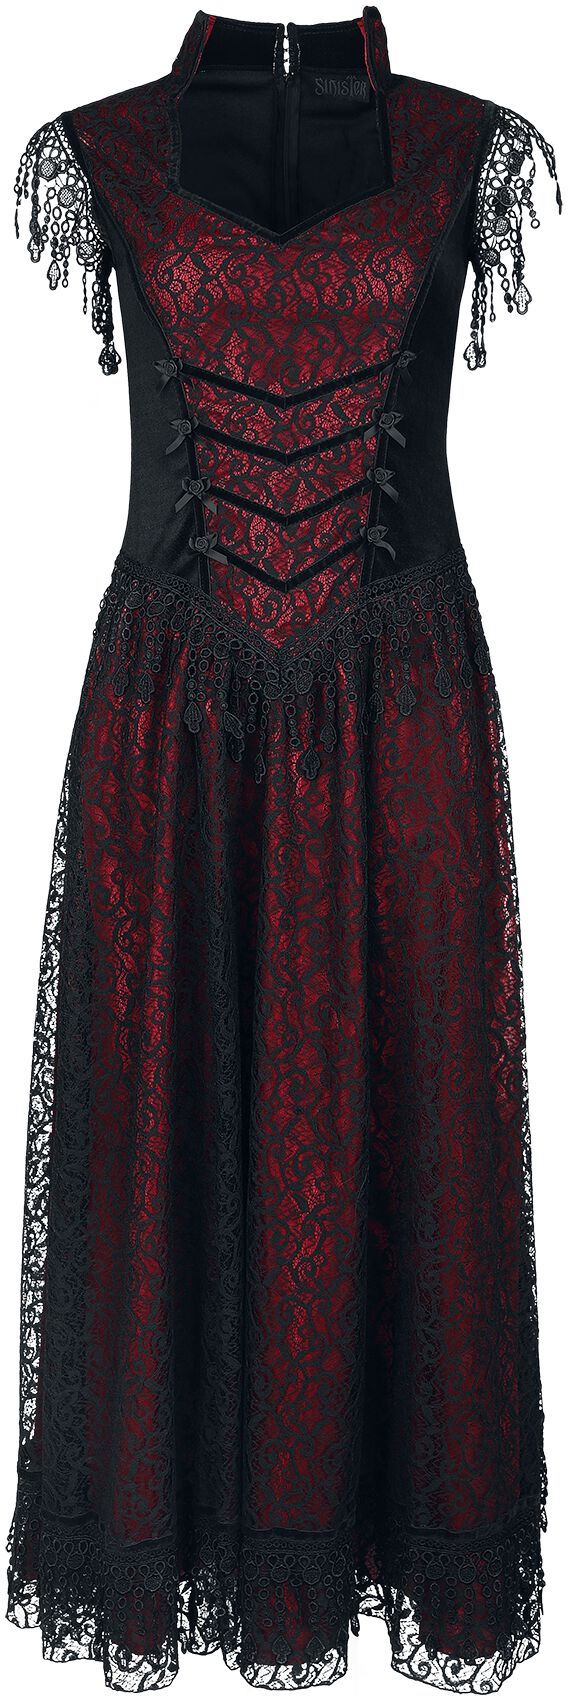 Sinister Gothic Gothic Dress Langes Kleid schwarz rot in M